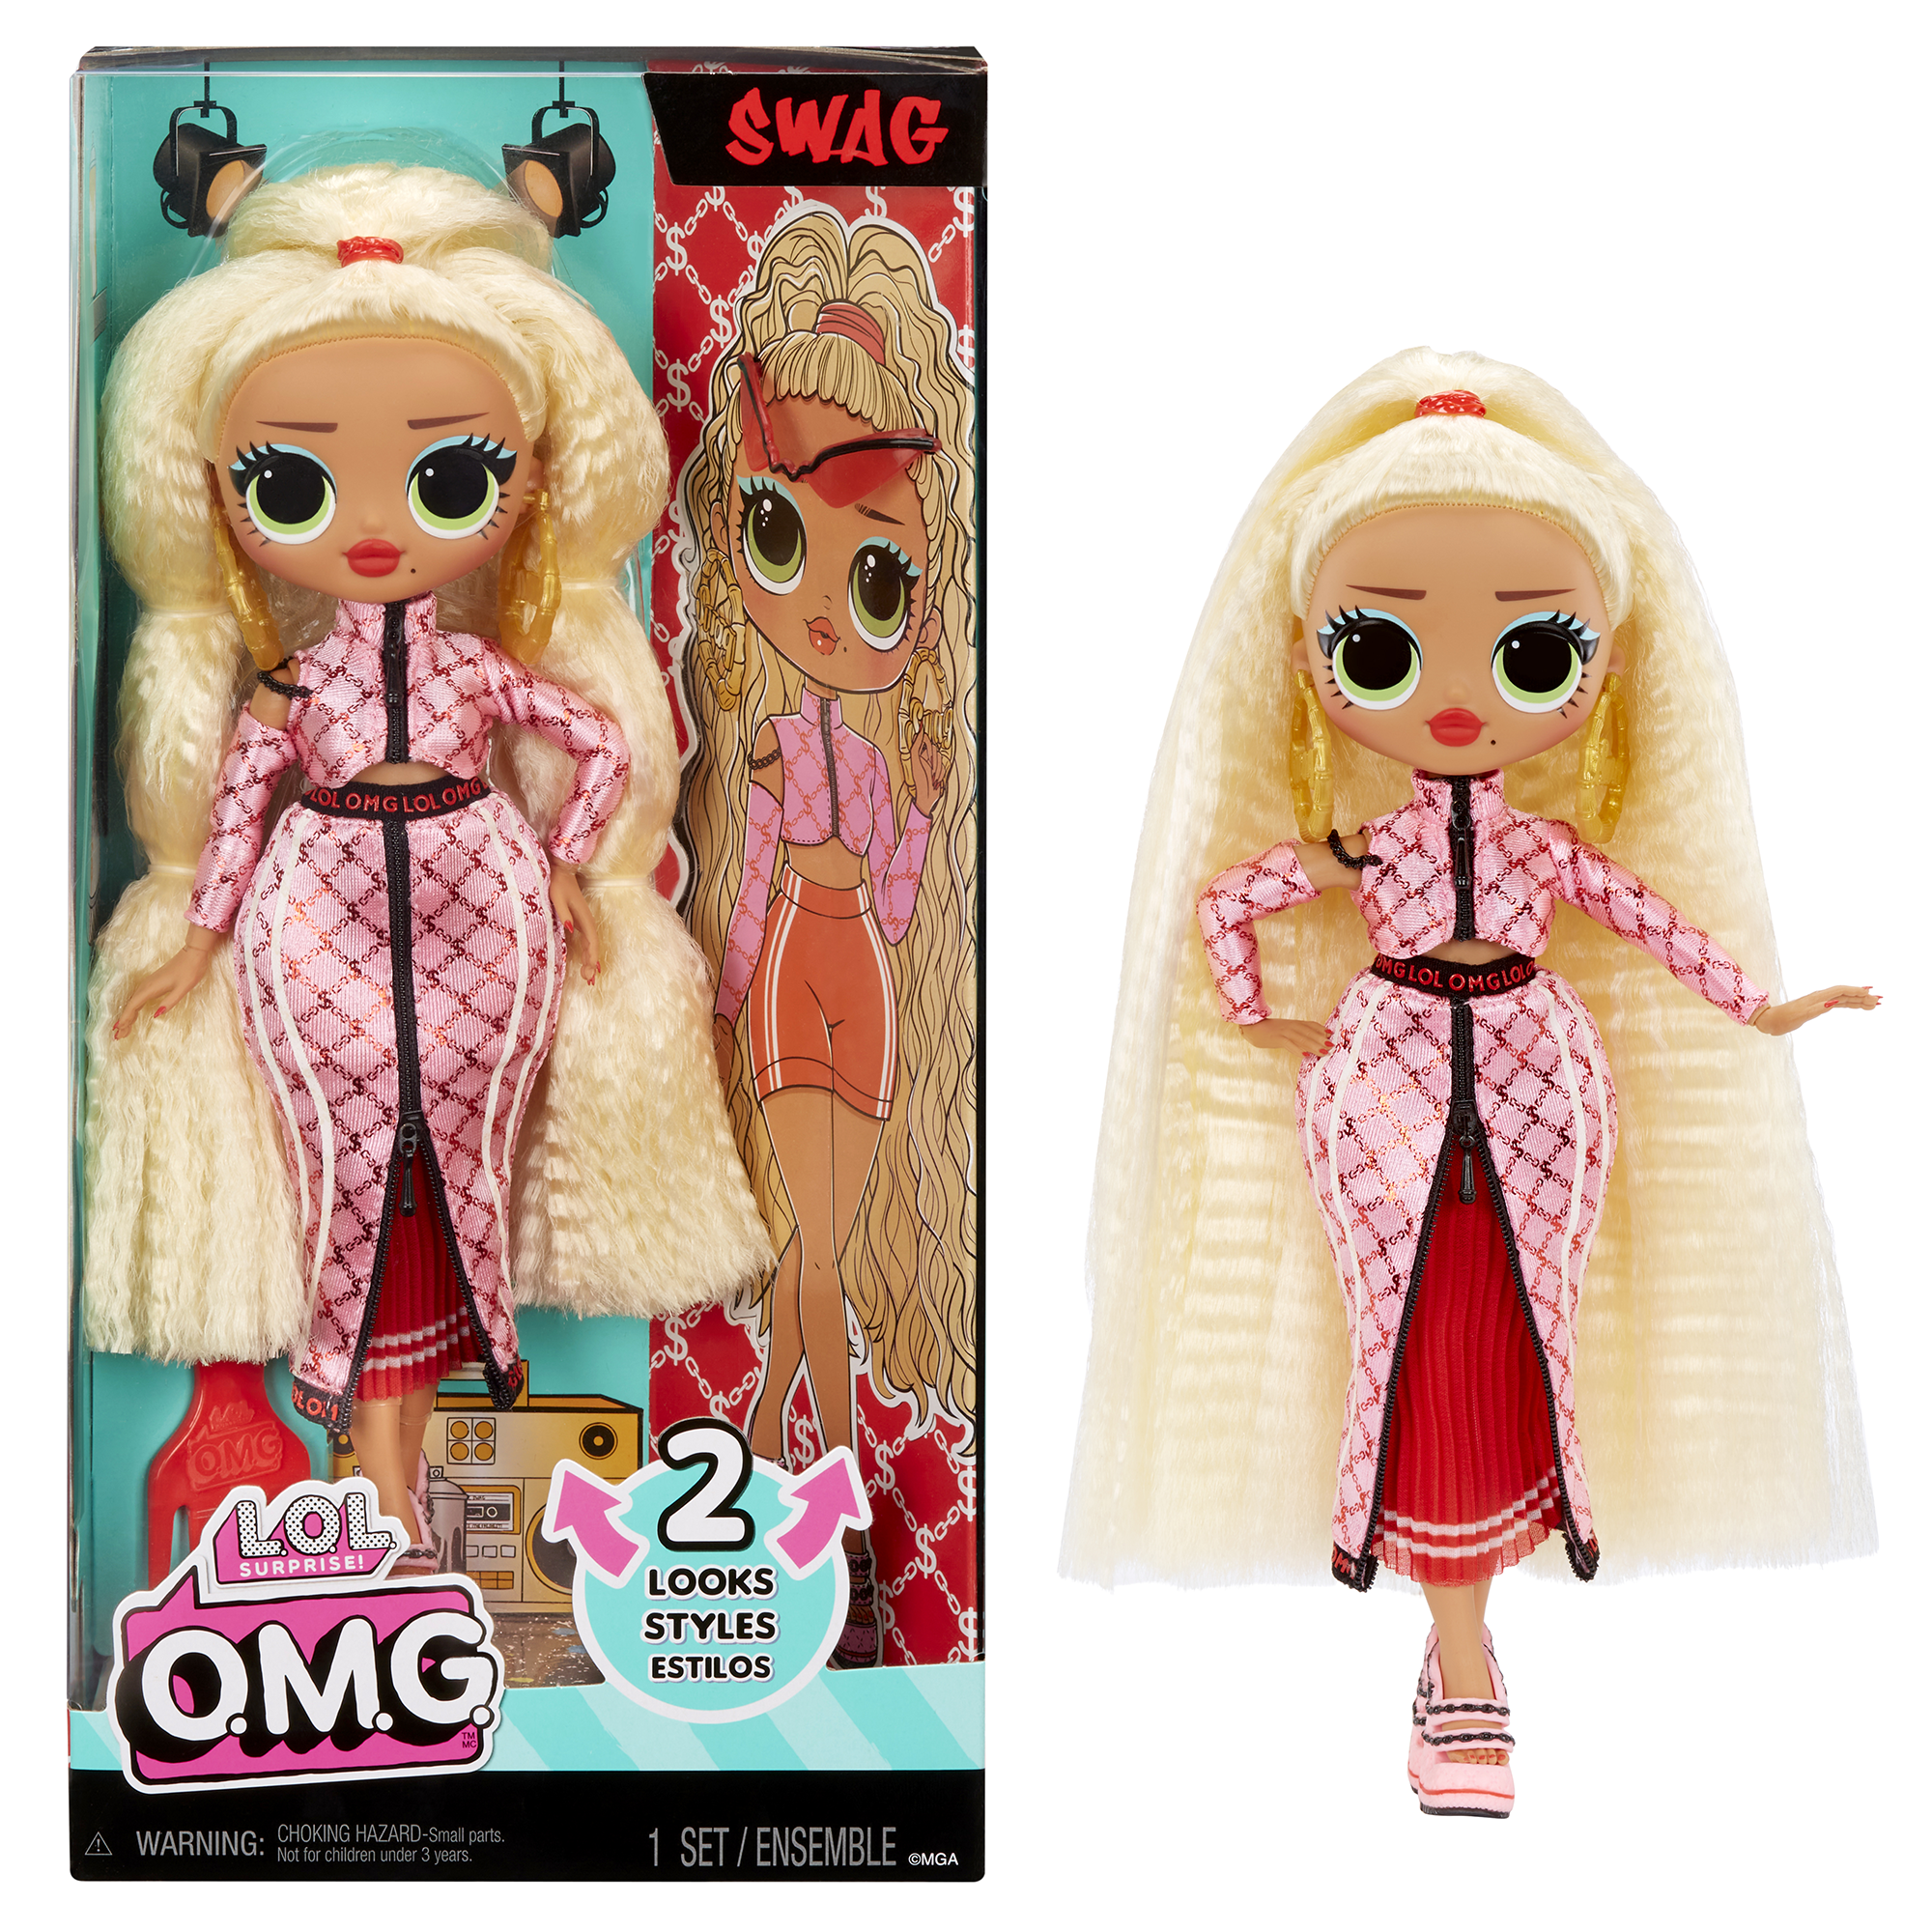 Lol surprise bambola alla moda omg - swag - con molteplici sorprese, tra cui abiti trasformabili e favolosi accessori - LOL